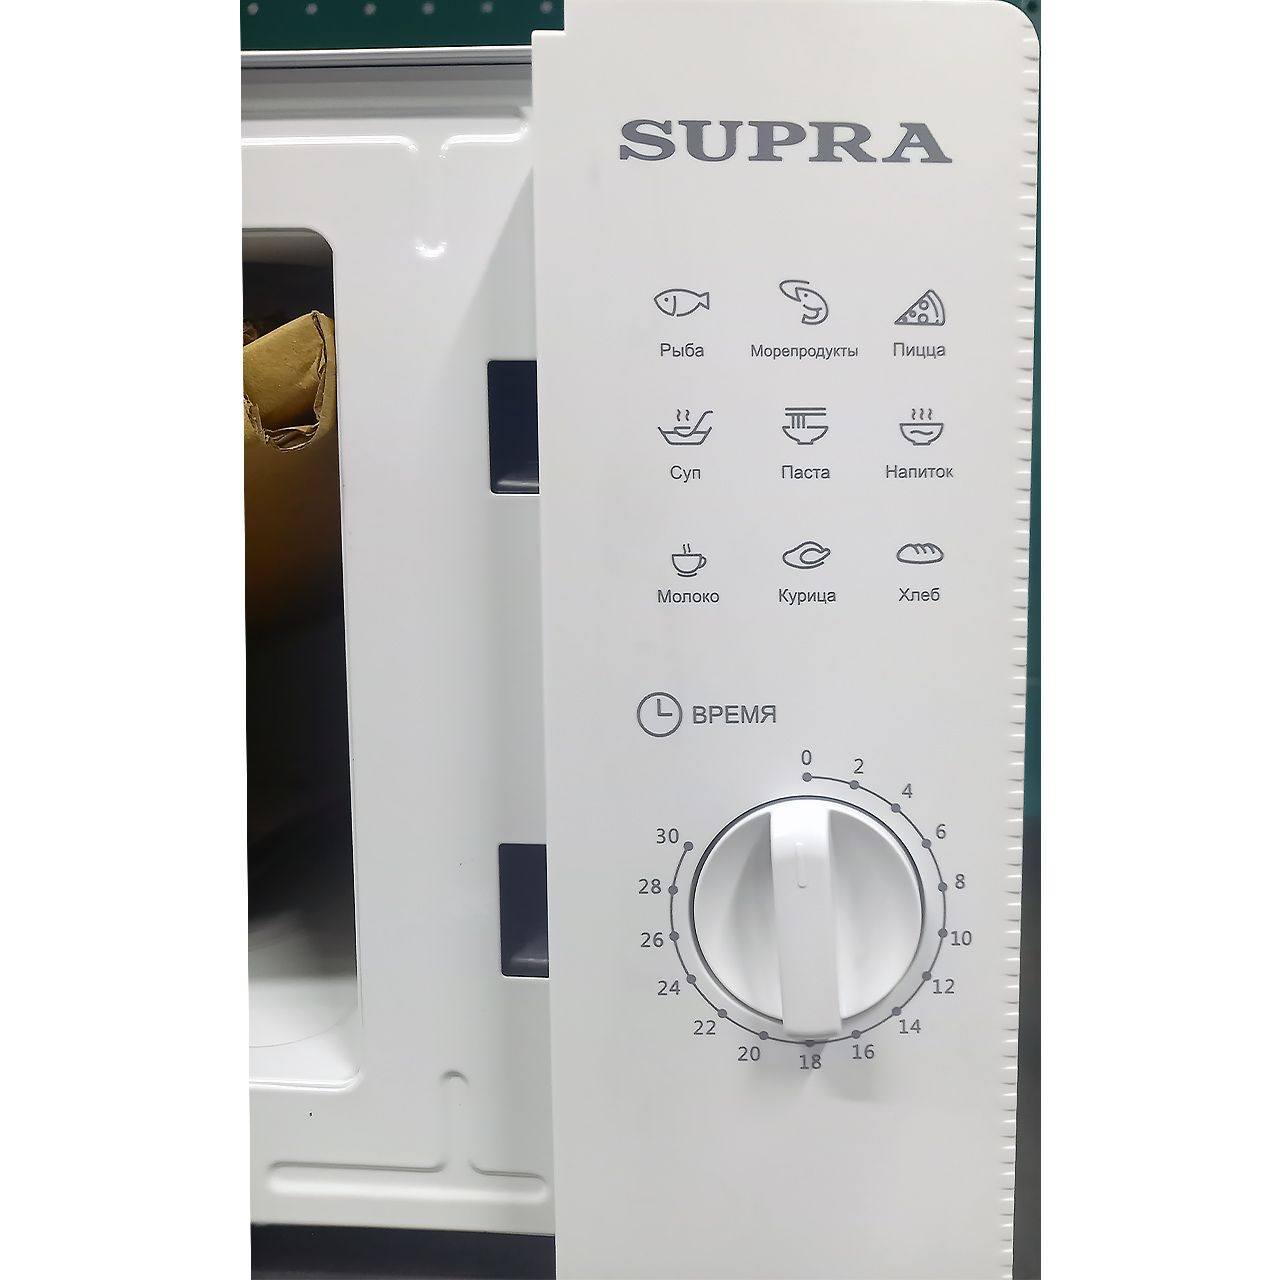 Микроволновка Supra мощностью 600 Вт